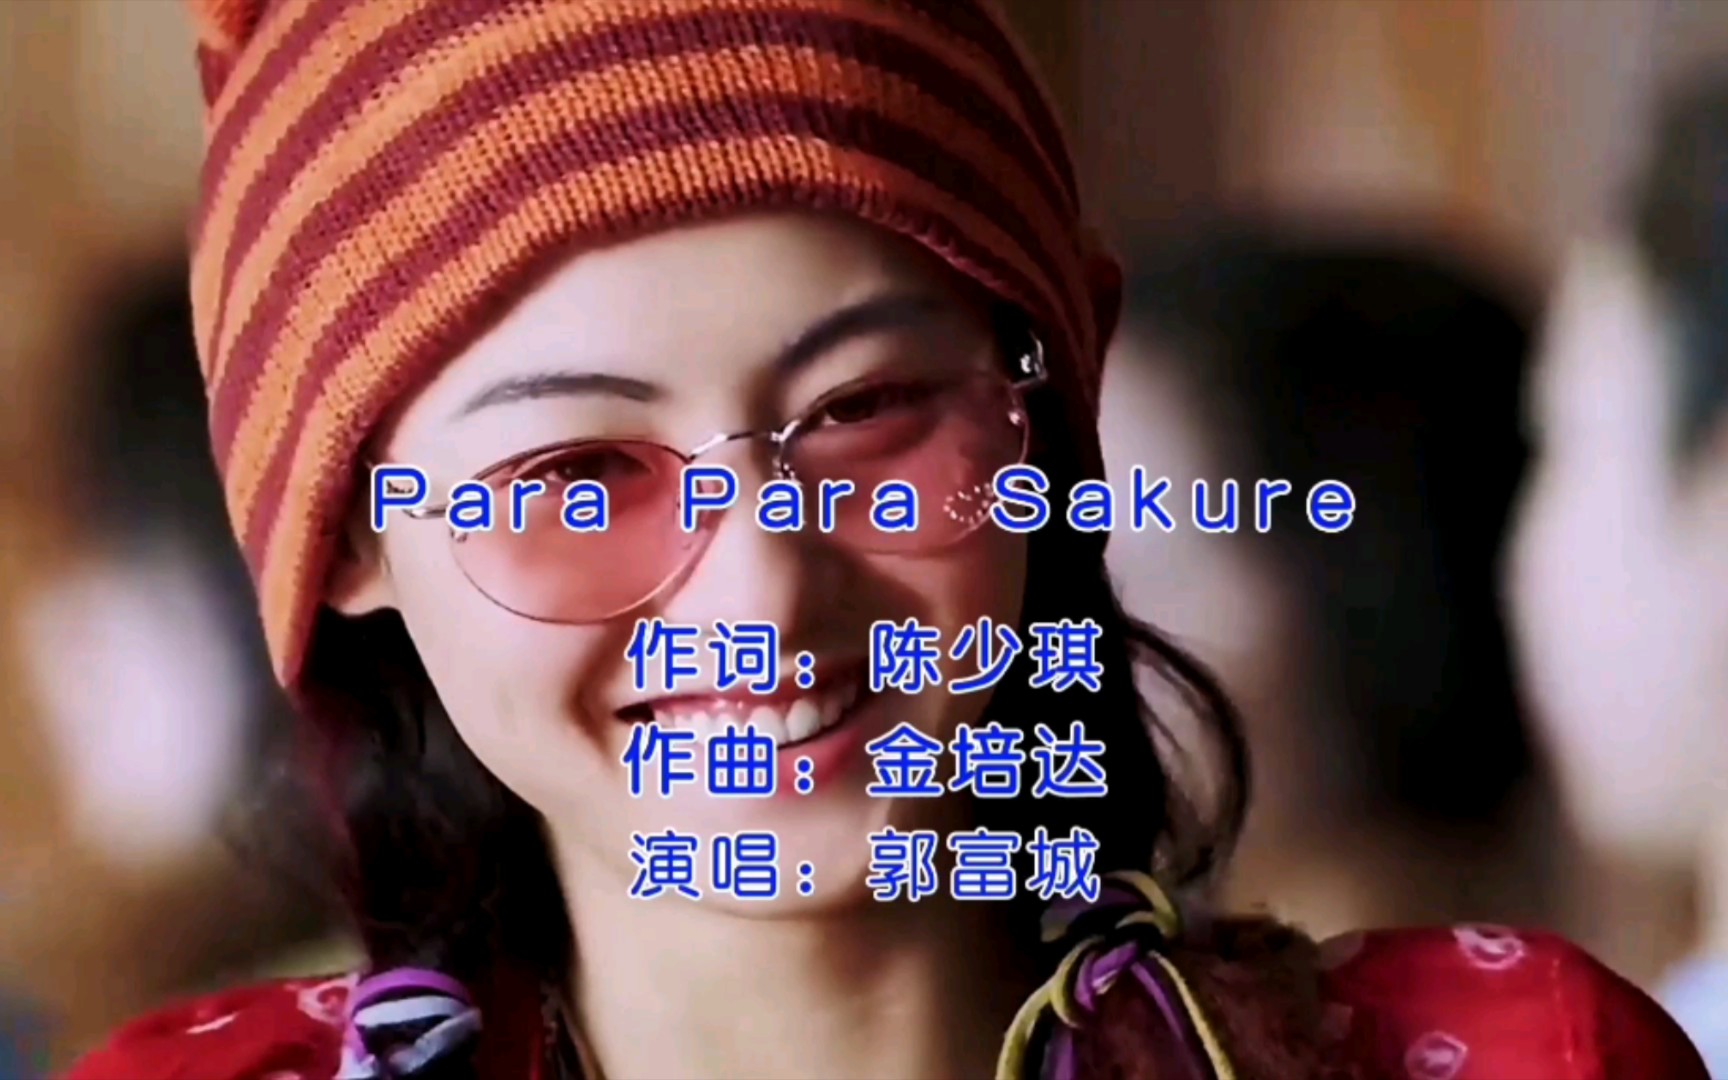 郭富城一首经典广场舞神曲《para para sakura》,一曲下来令人意犹